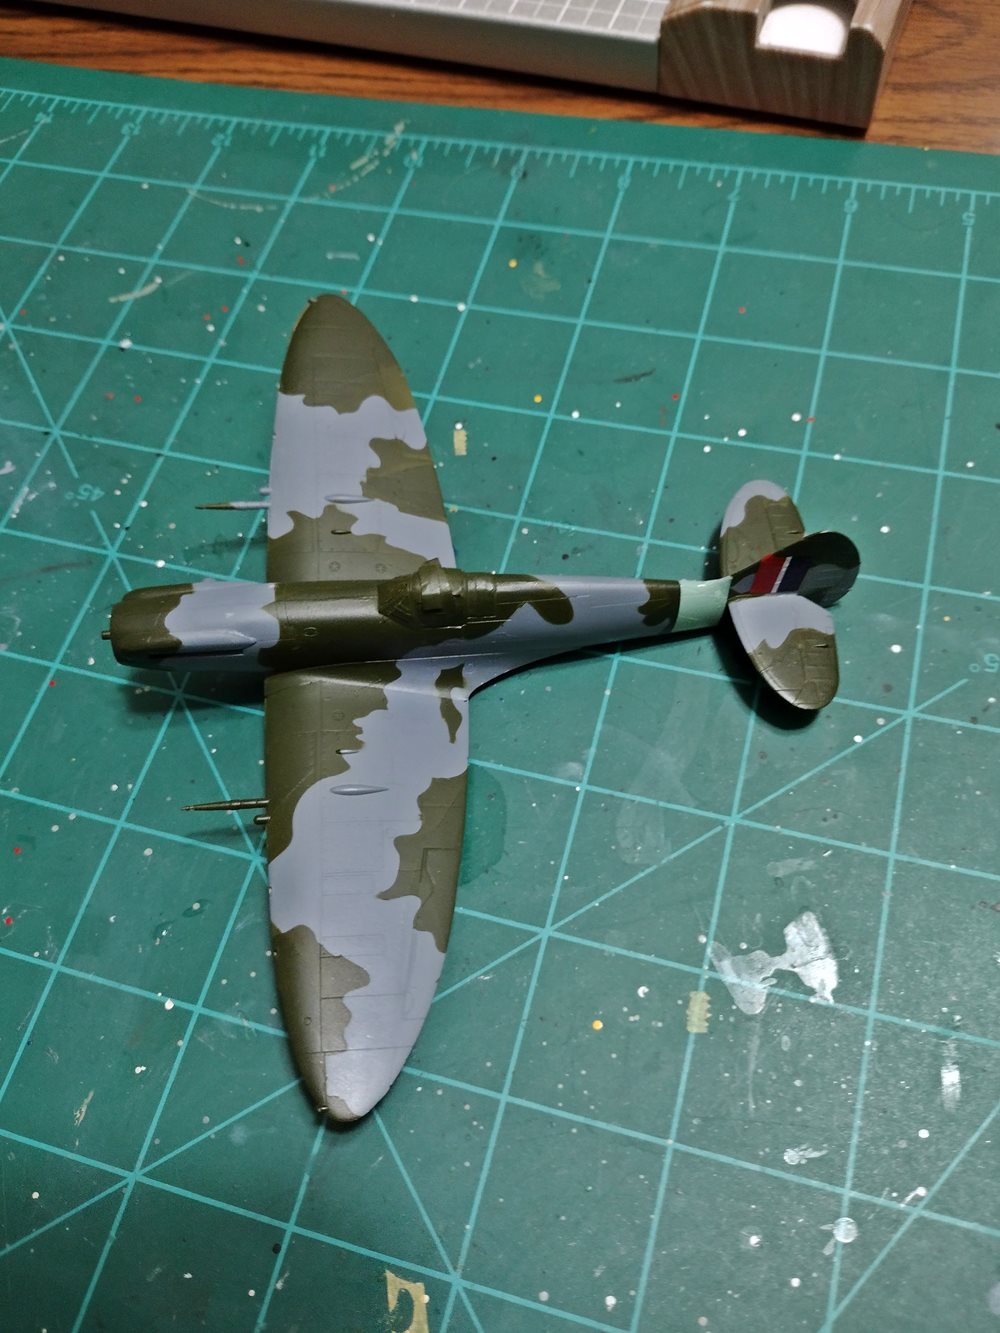 SpitfireMk.XIVc05b